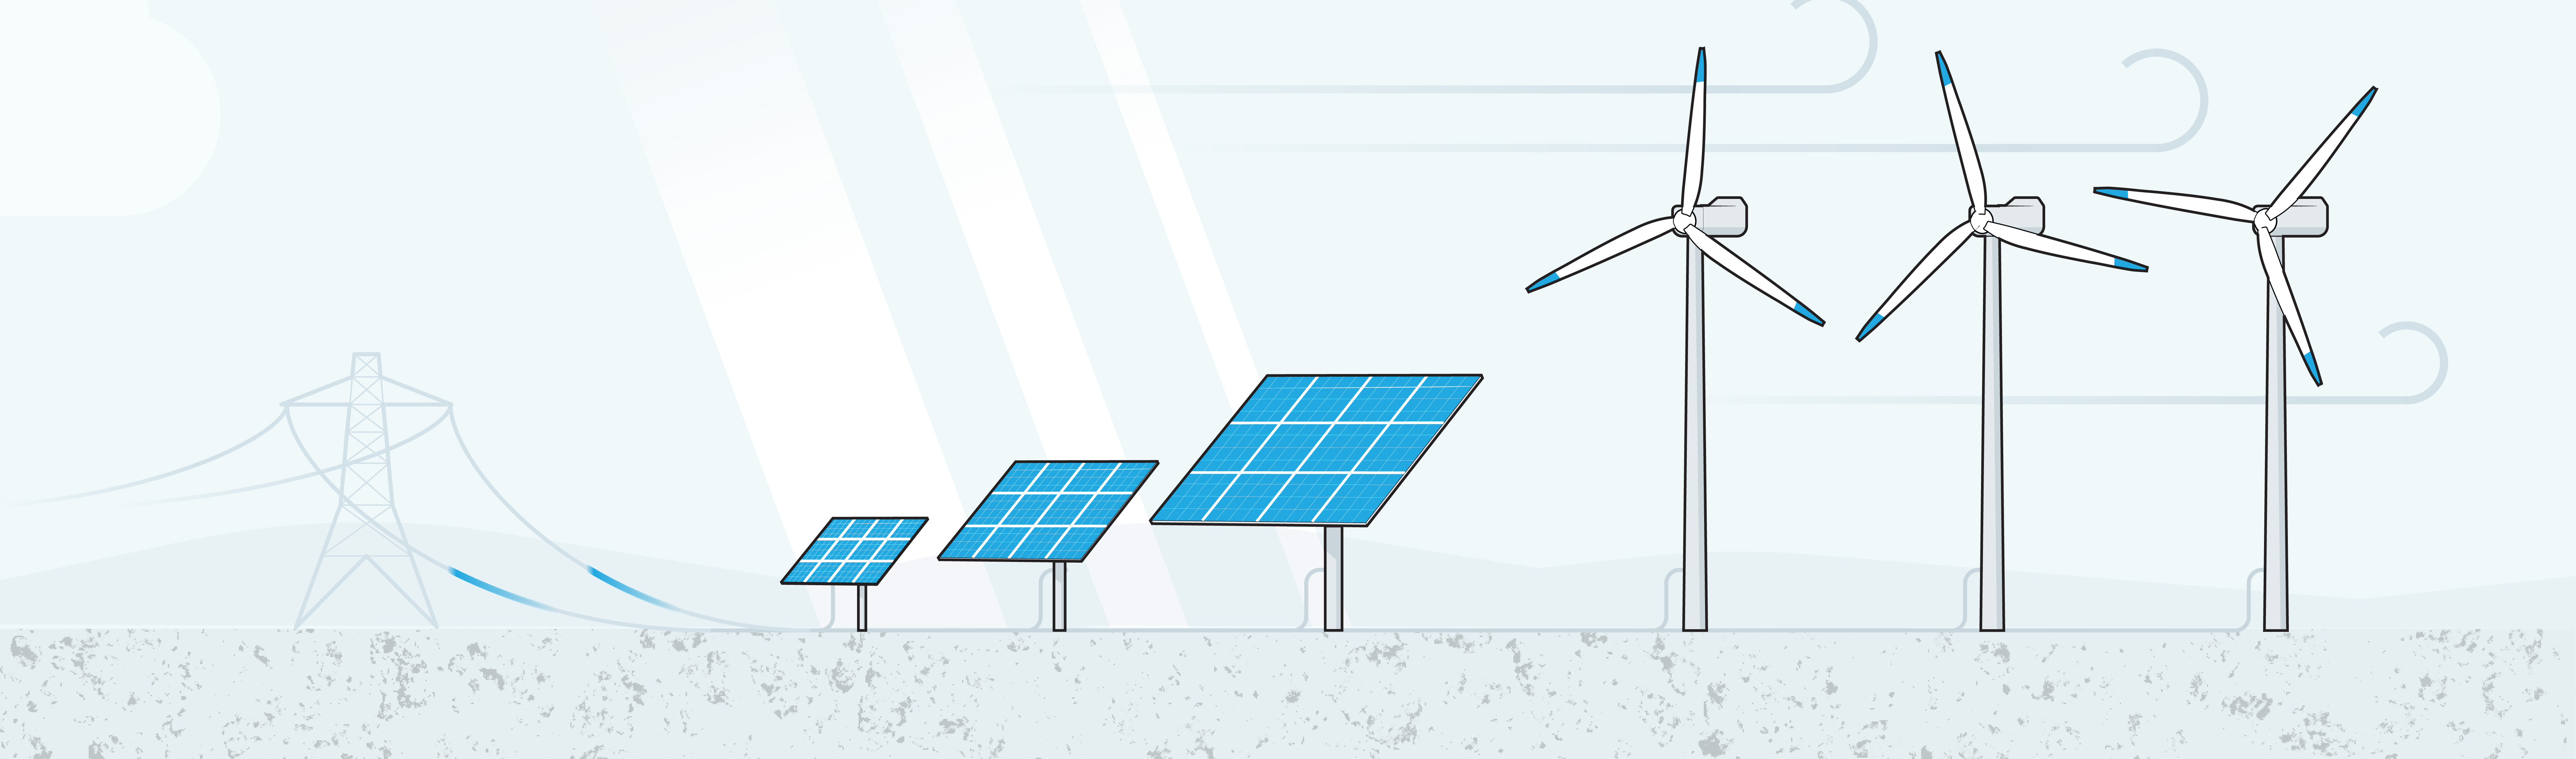 Concept Animation_T0-renewables banner